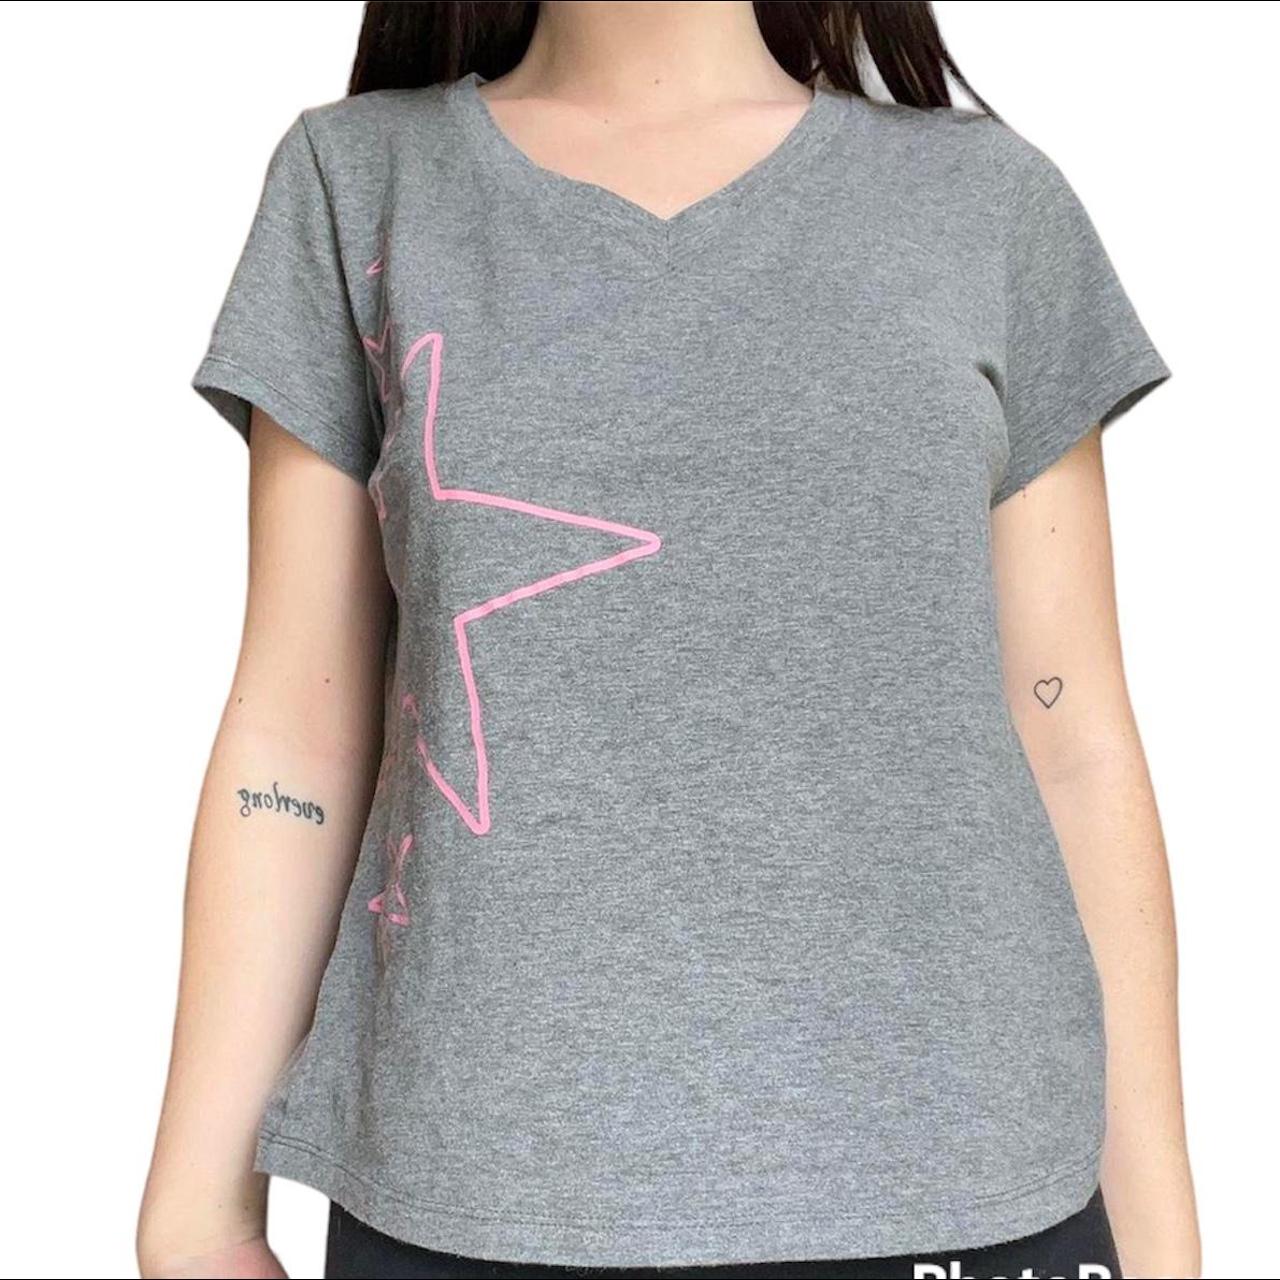 Dearfoams Women's Grey and Pink T-shirt